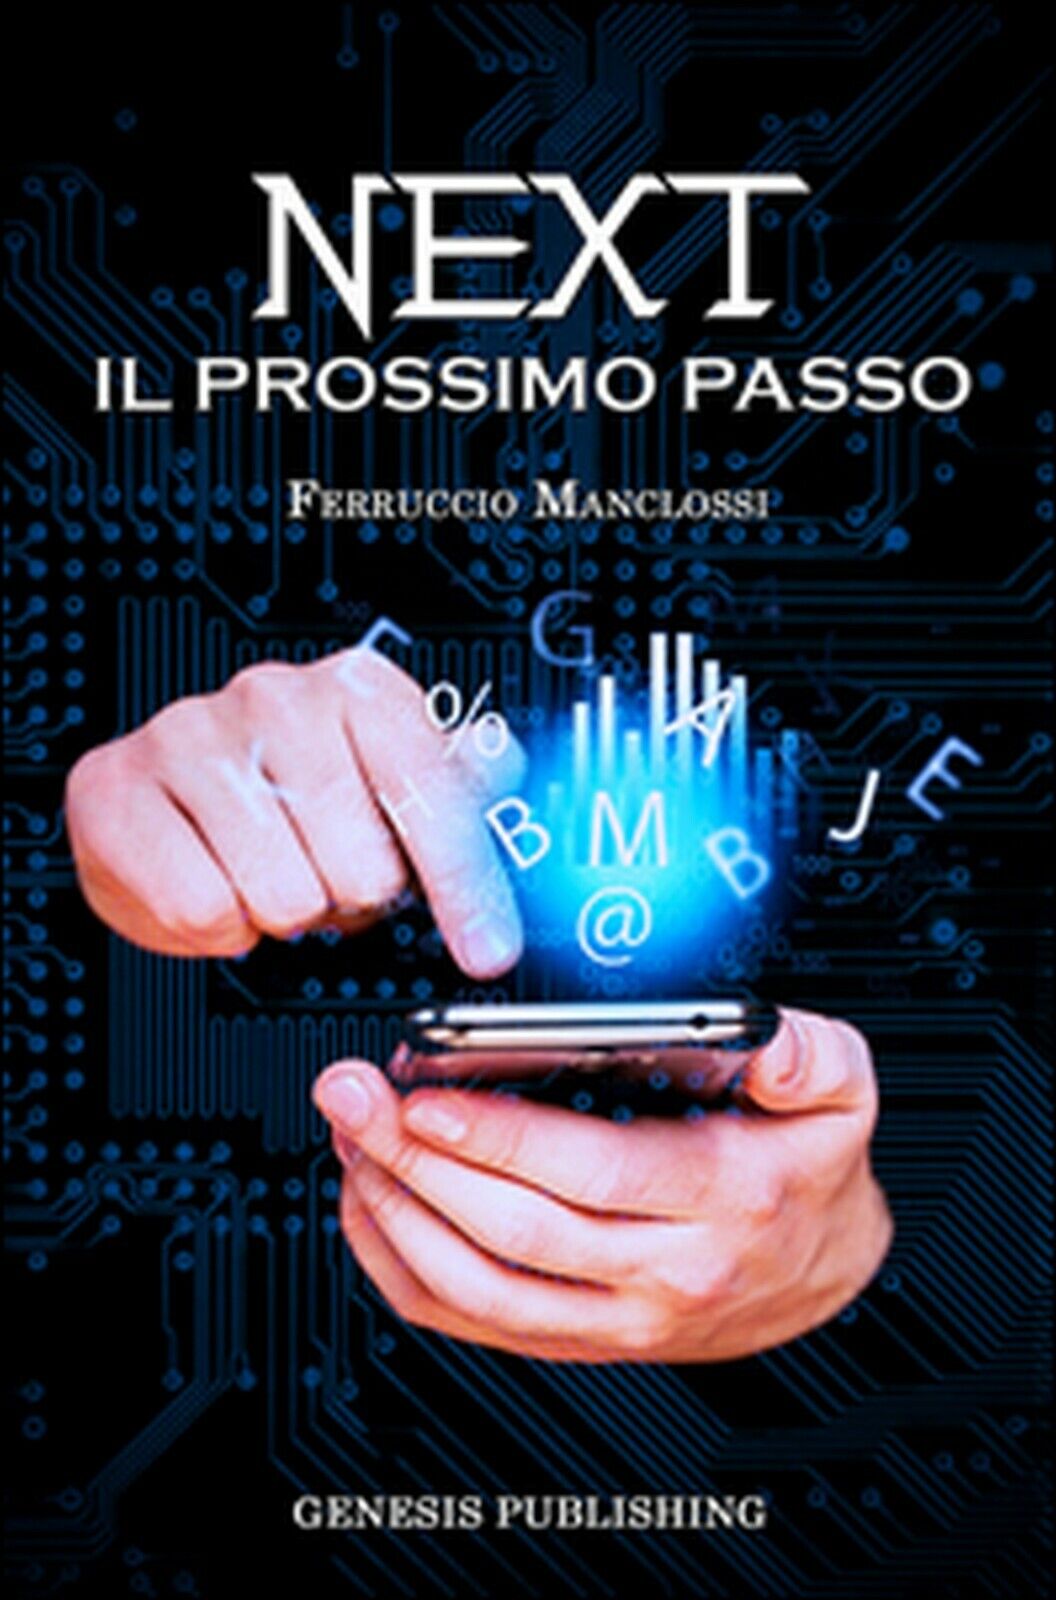 Next. Il prossimo passo  di Ferruccio Manclossi,  2016,  Genesis Publishing